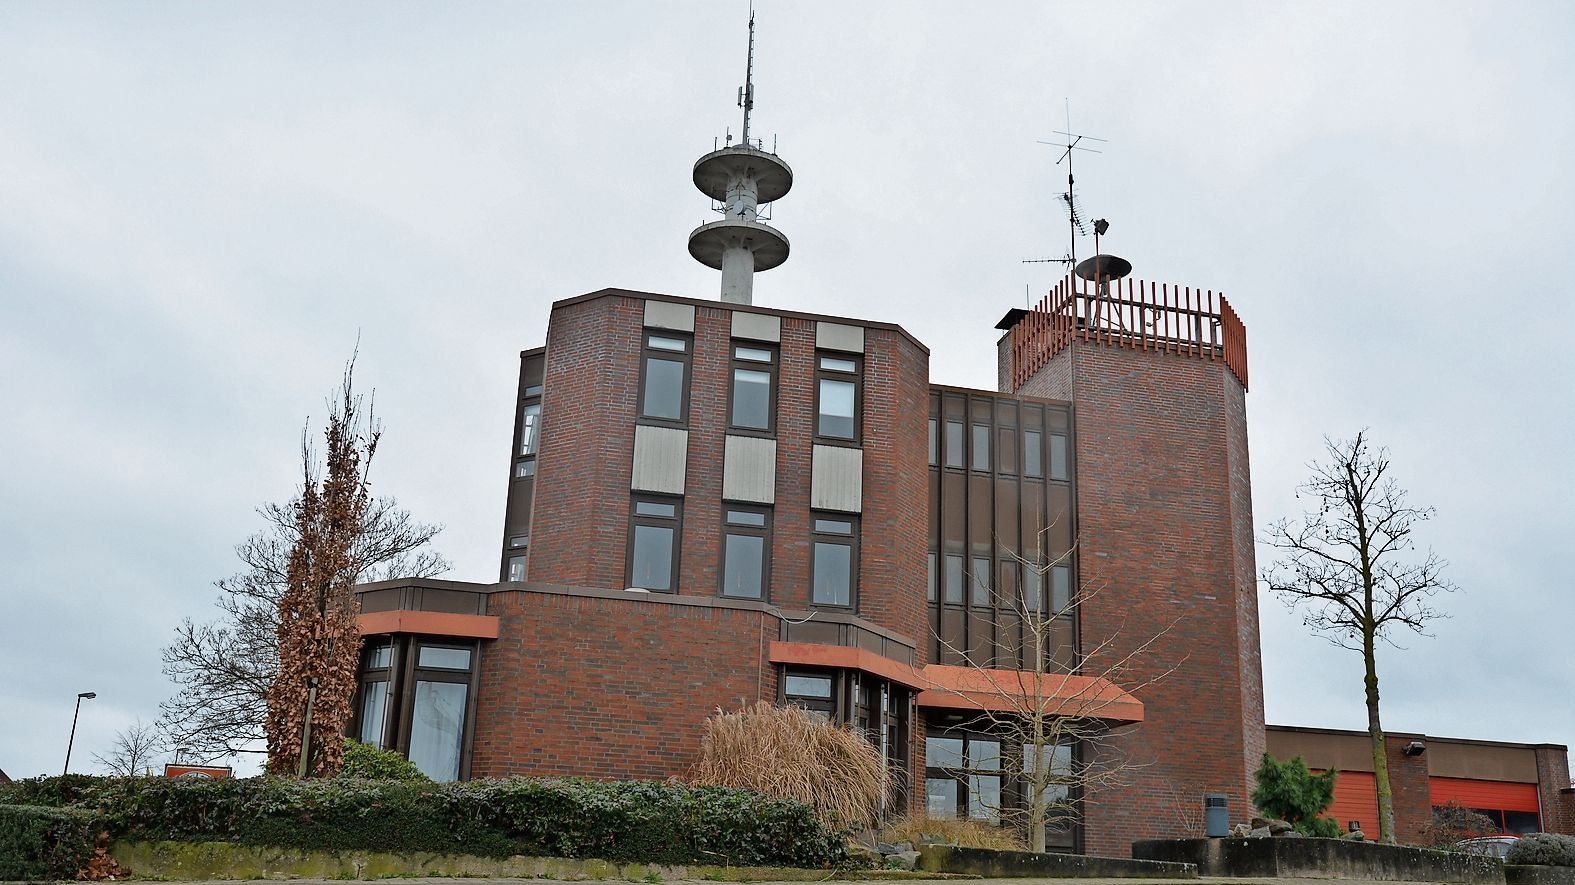 Keine Verzögerungen mehr: Das Cloppenburger Feuerwehrhaus soll schnell umgebaut werden. Foto: Archiv/Hermes